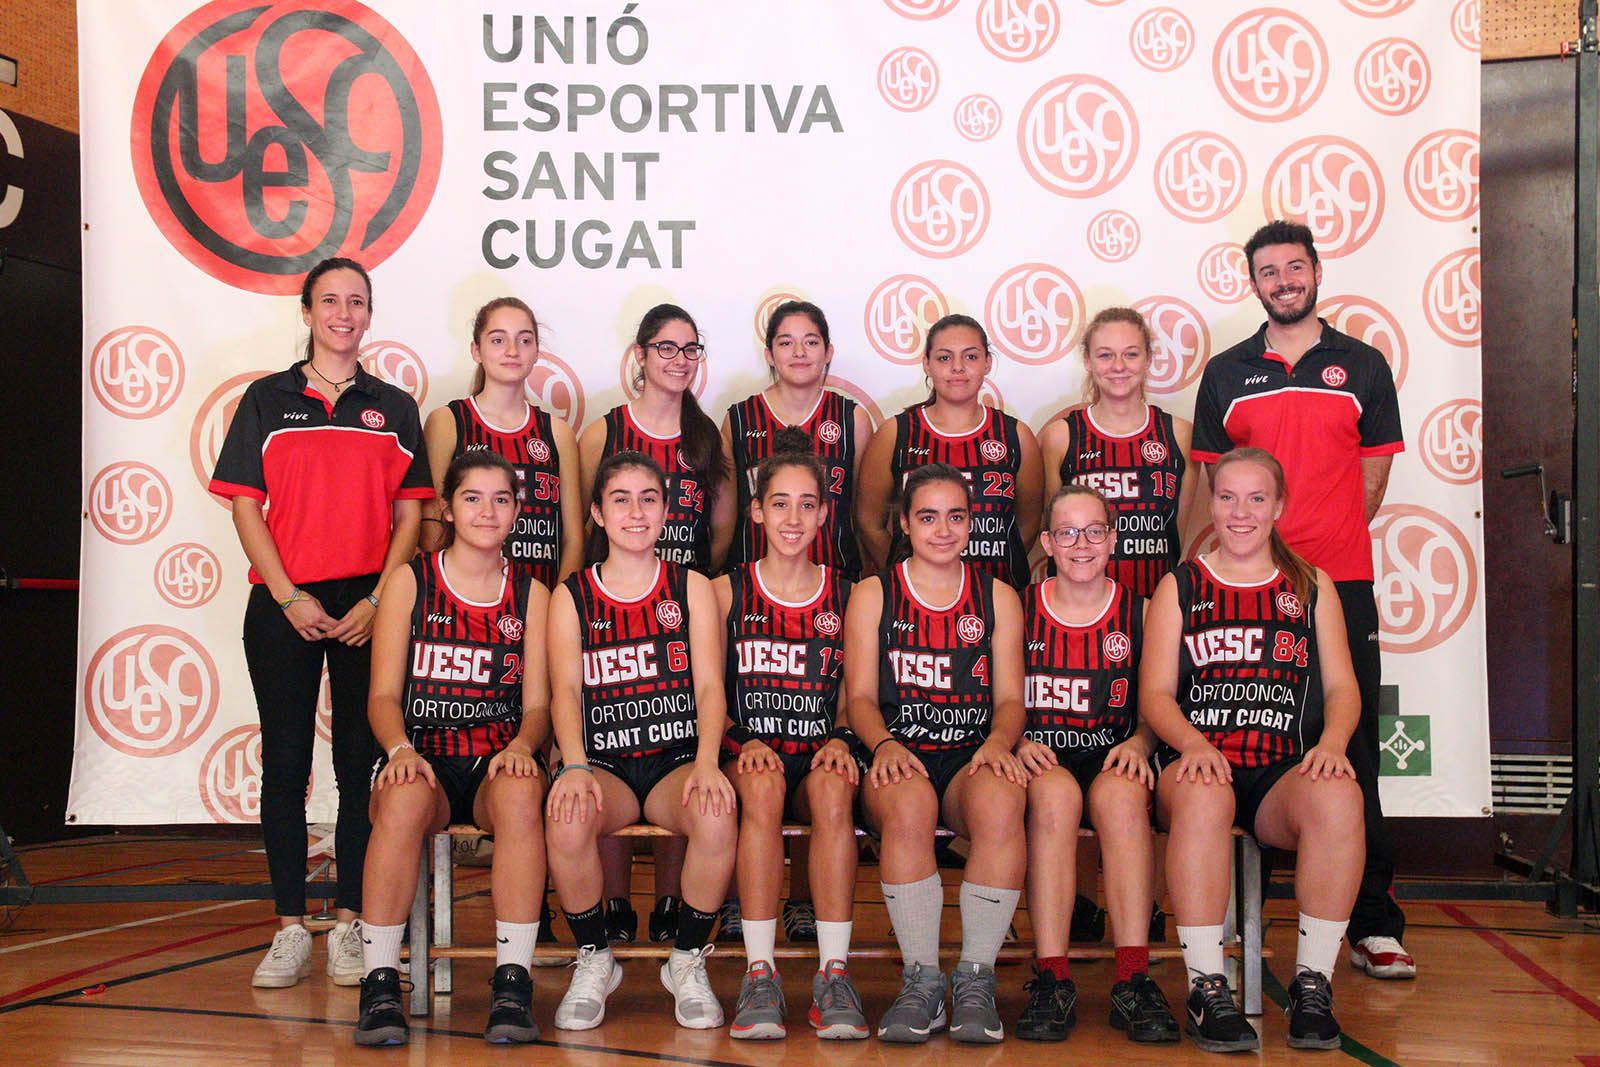 Presentació de les seccions de bàsquet i tennis taula de la UESC. Foto: Lali Álvarez